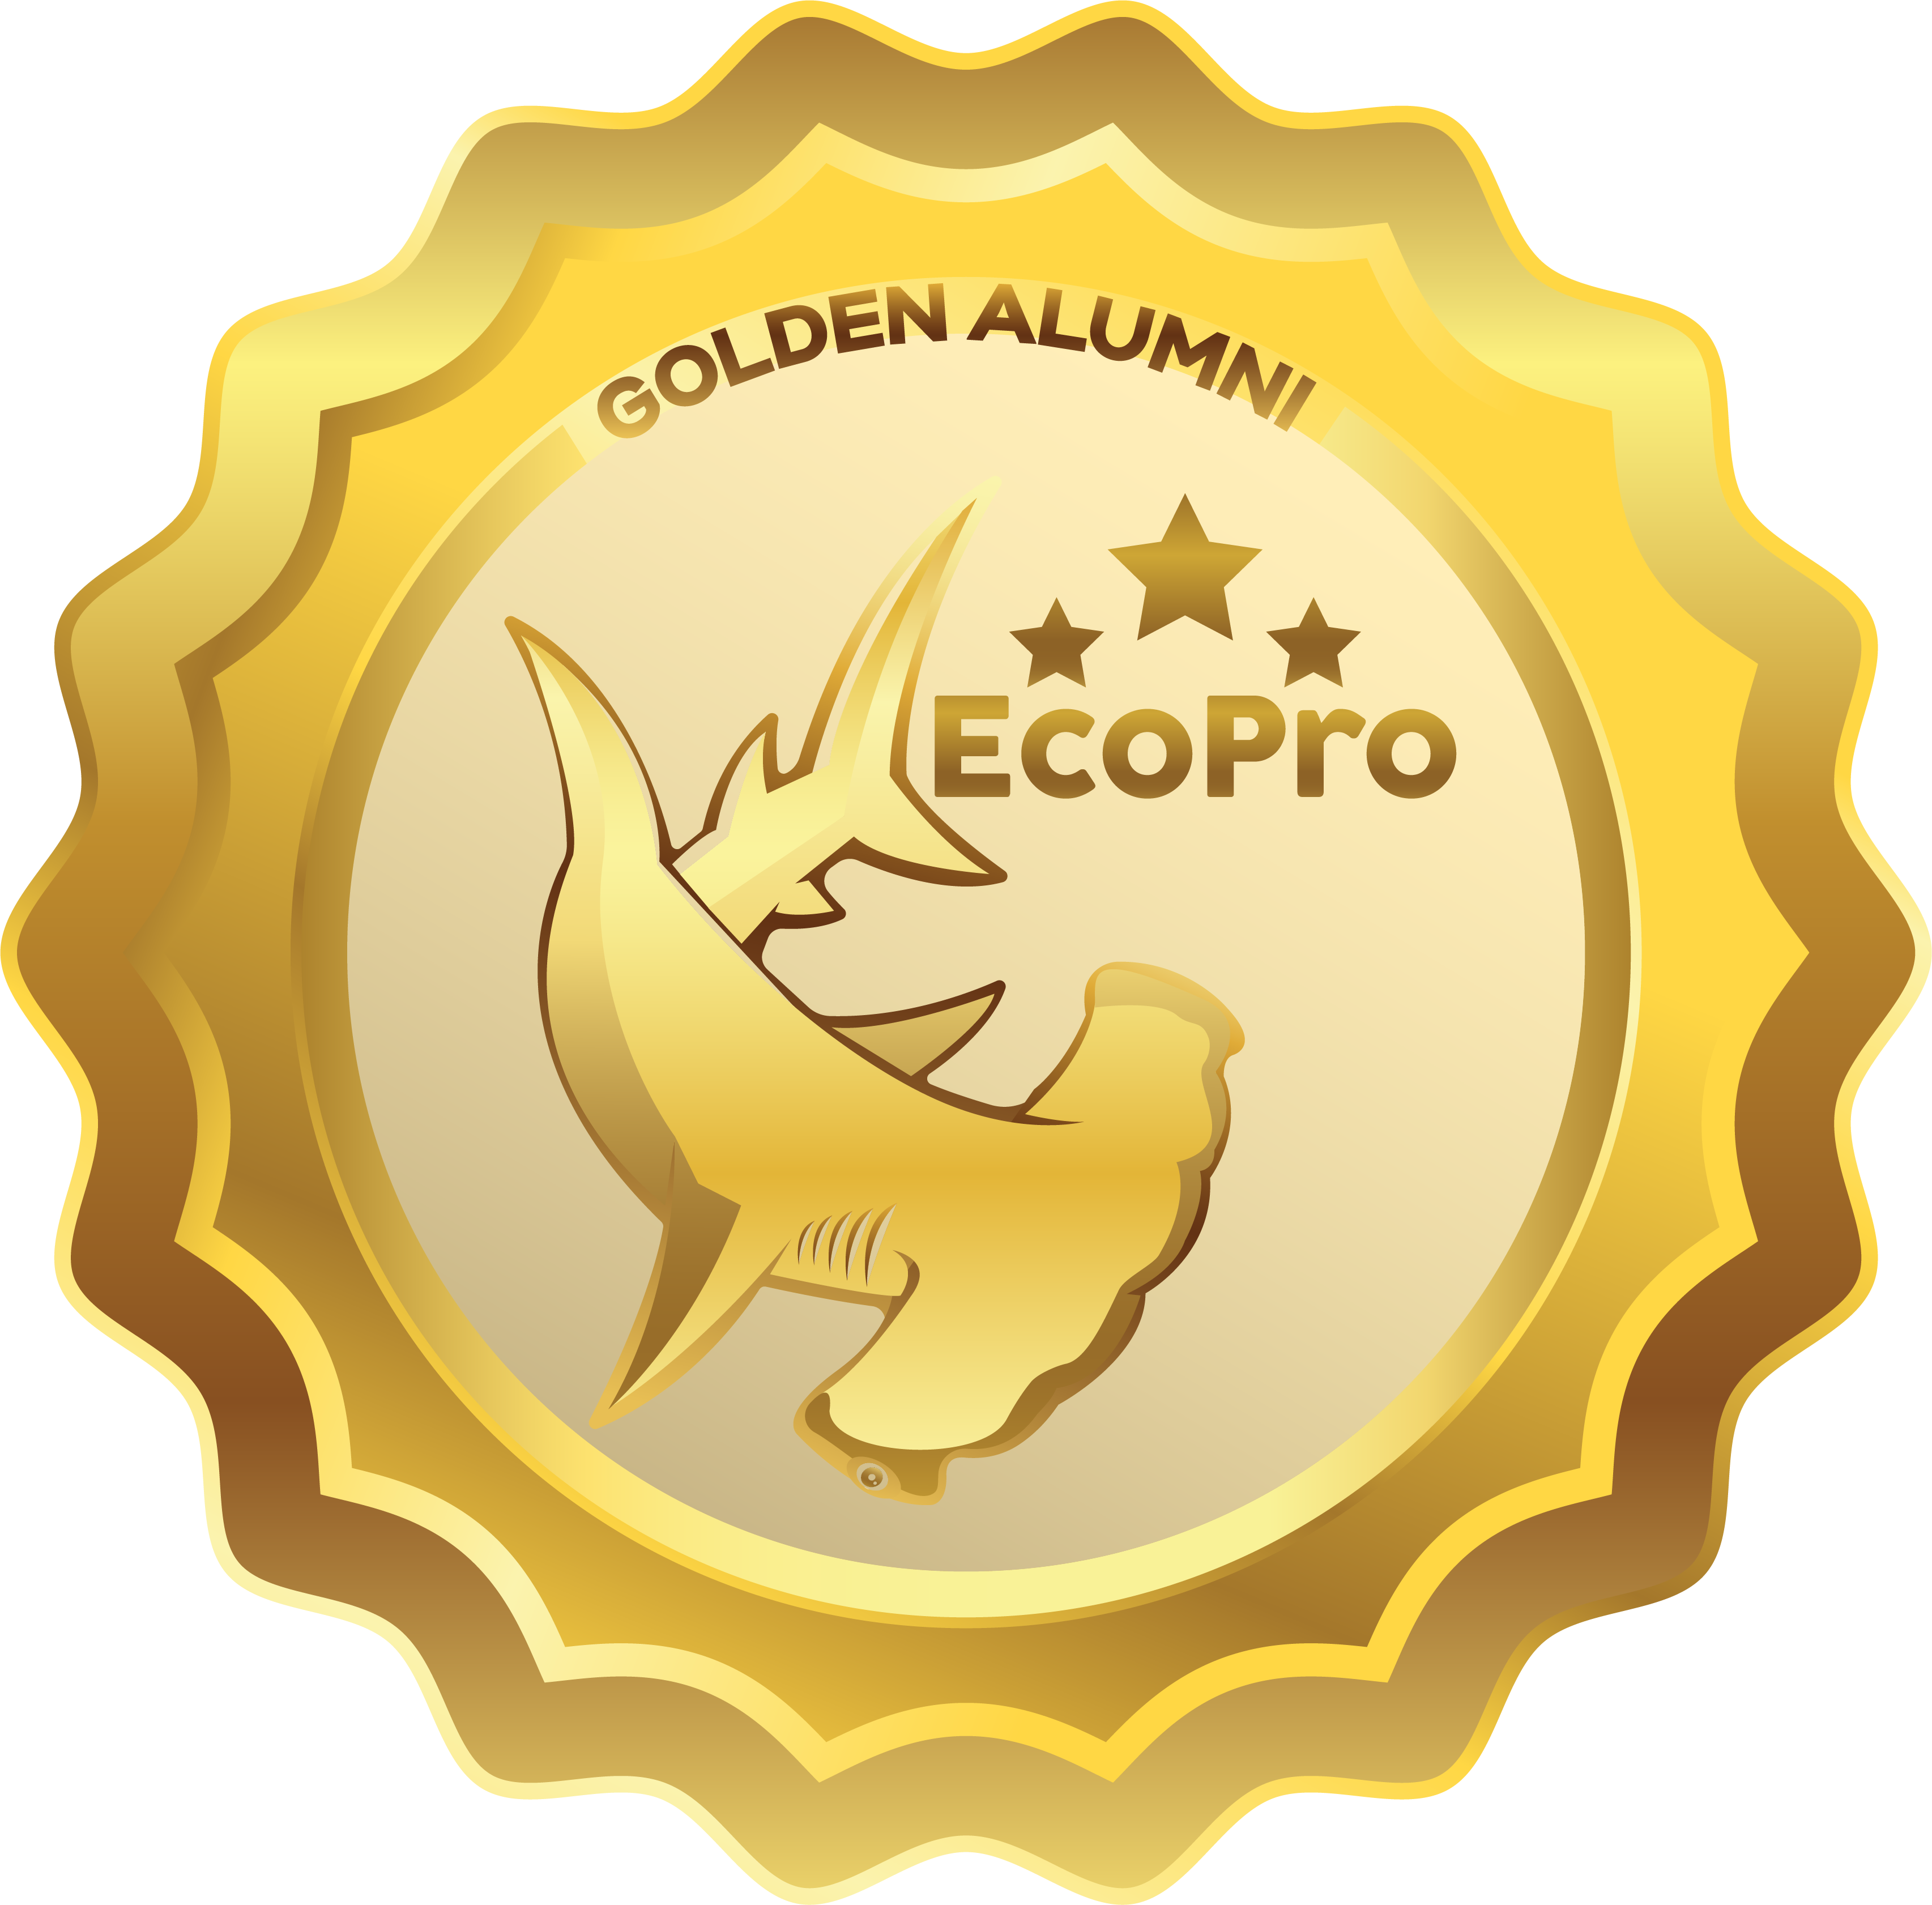 Golden Alumni